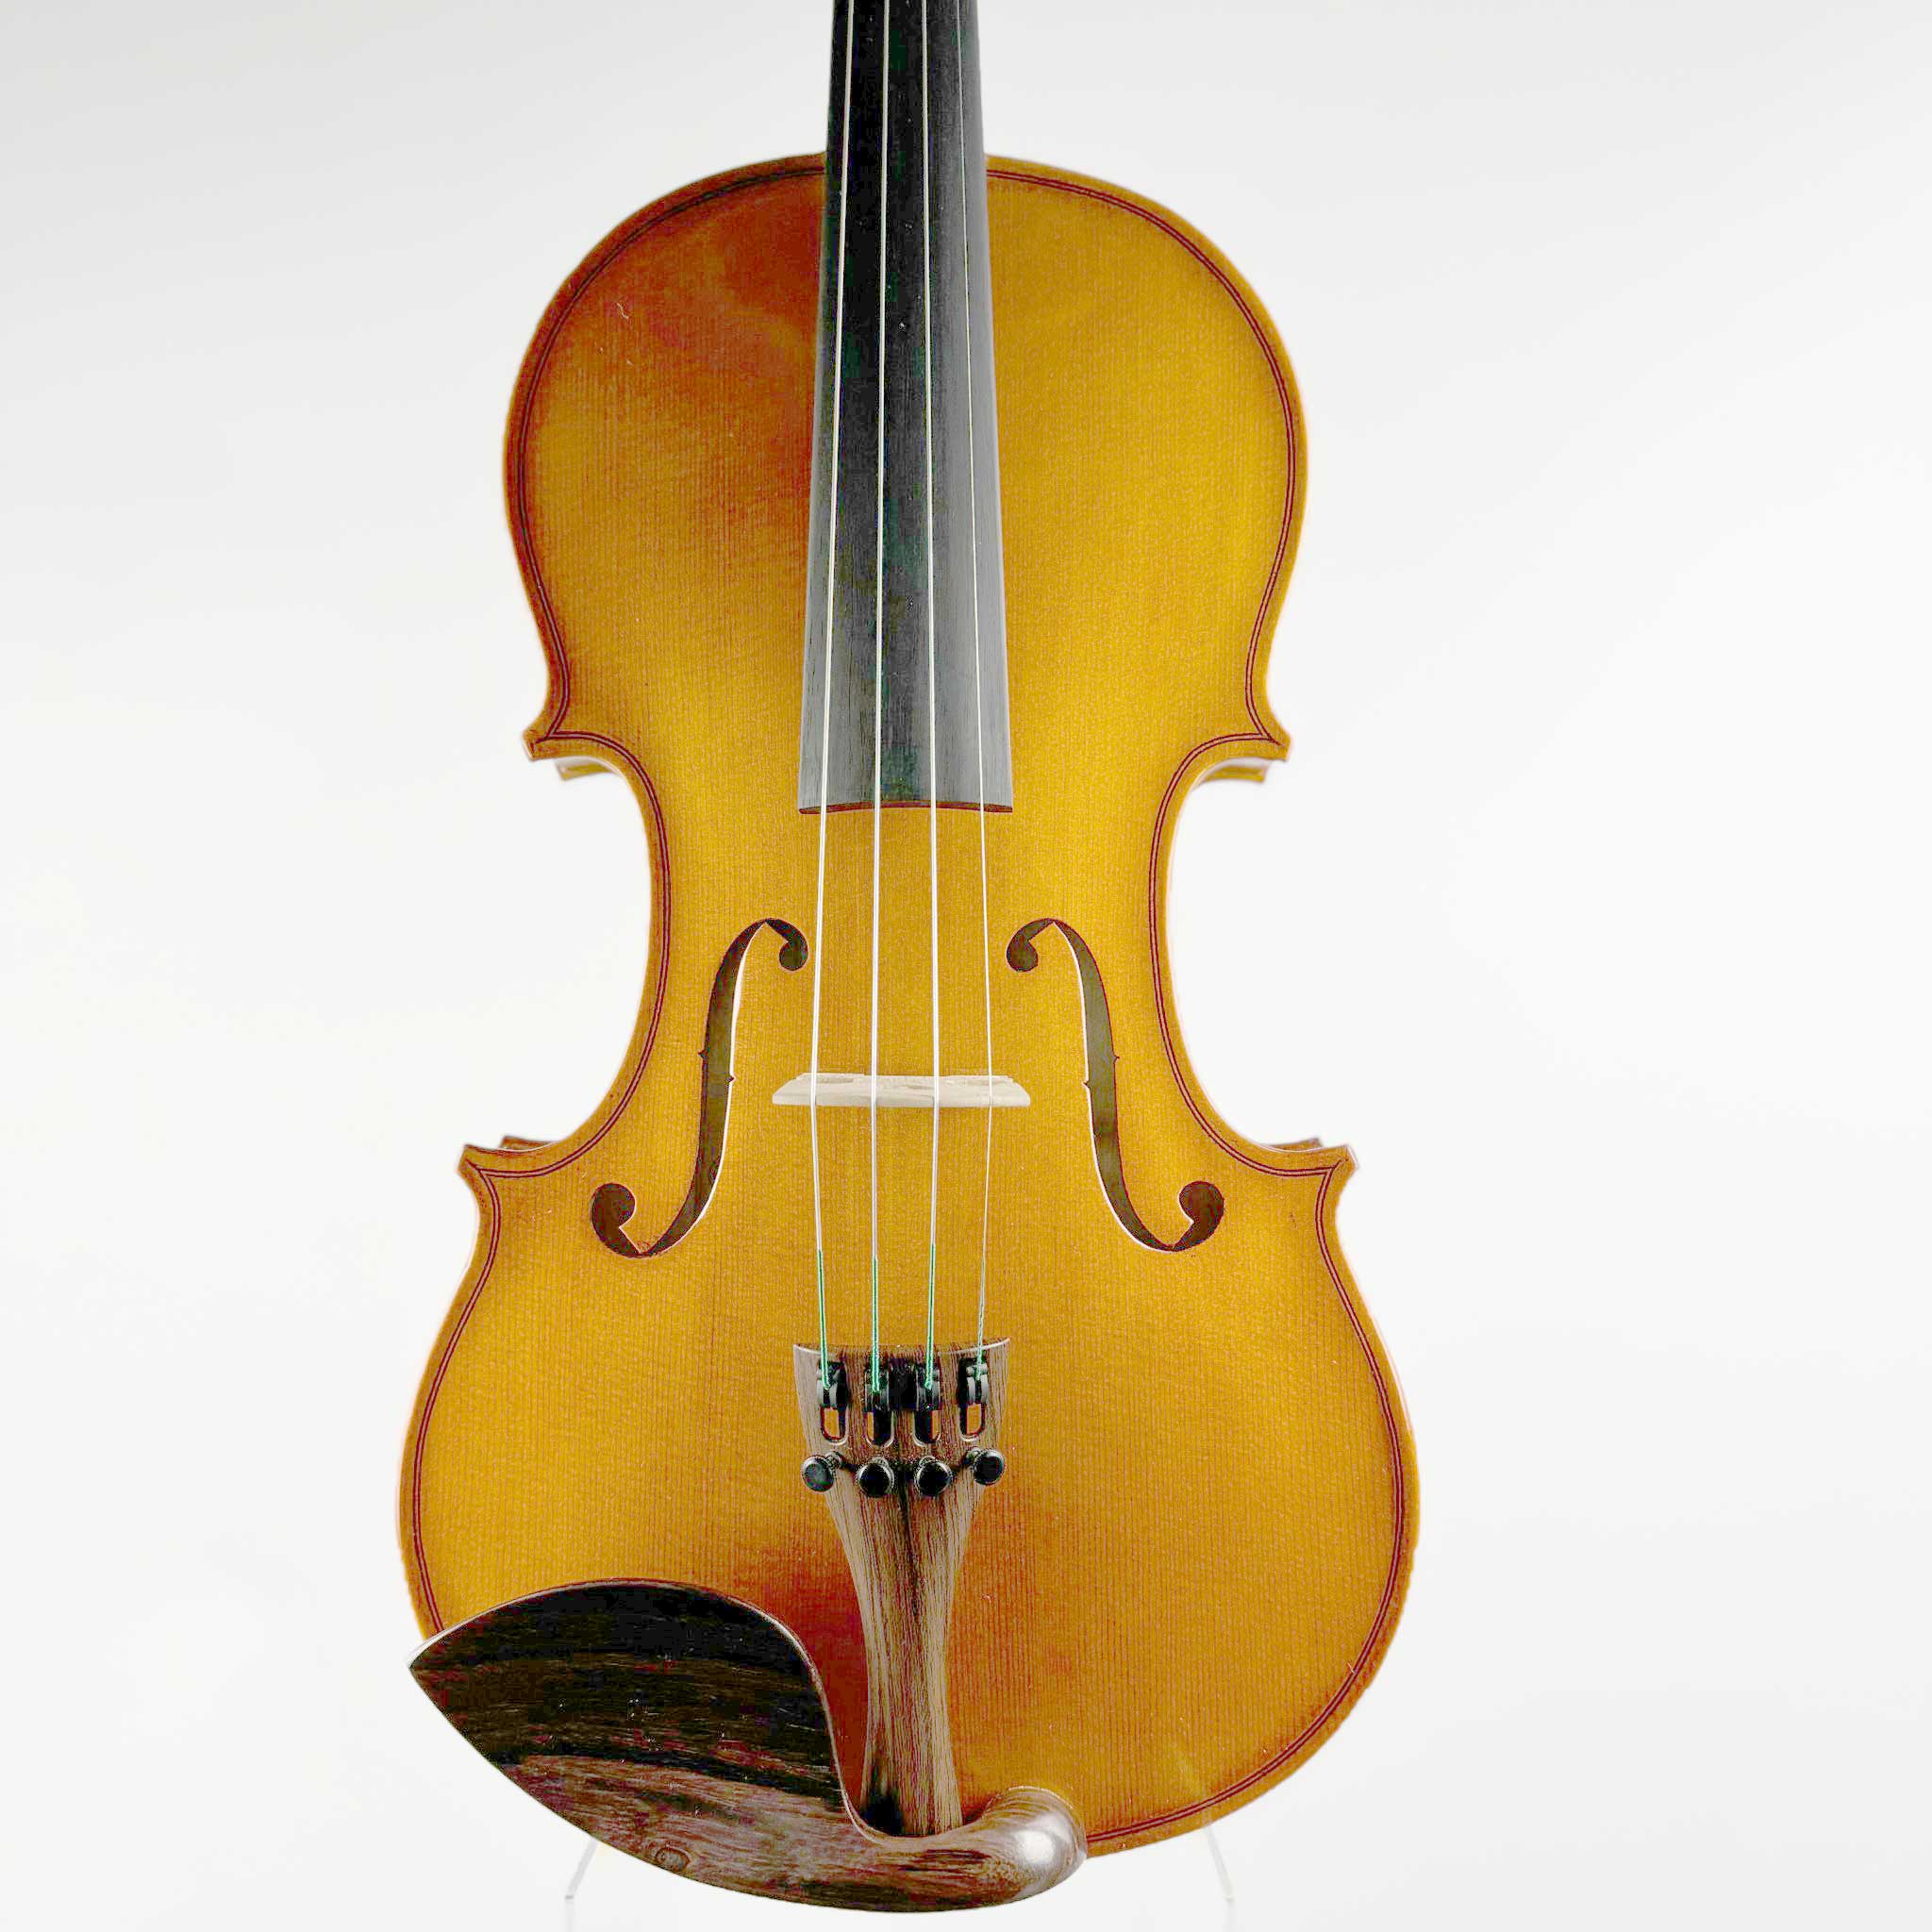 バイオリン・ヴィオラ・チェロ 在庫一覧 ／ Violin・Viola・Violoncello Stock List｜島村楽器 ビビット南船橋店